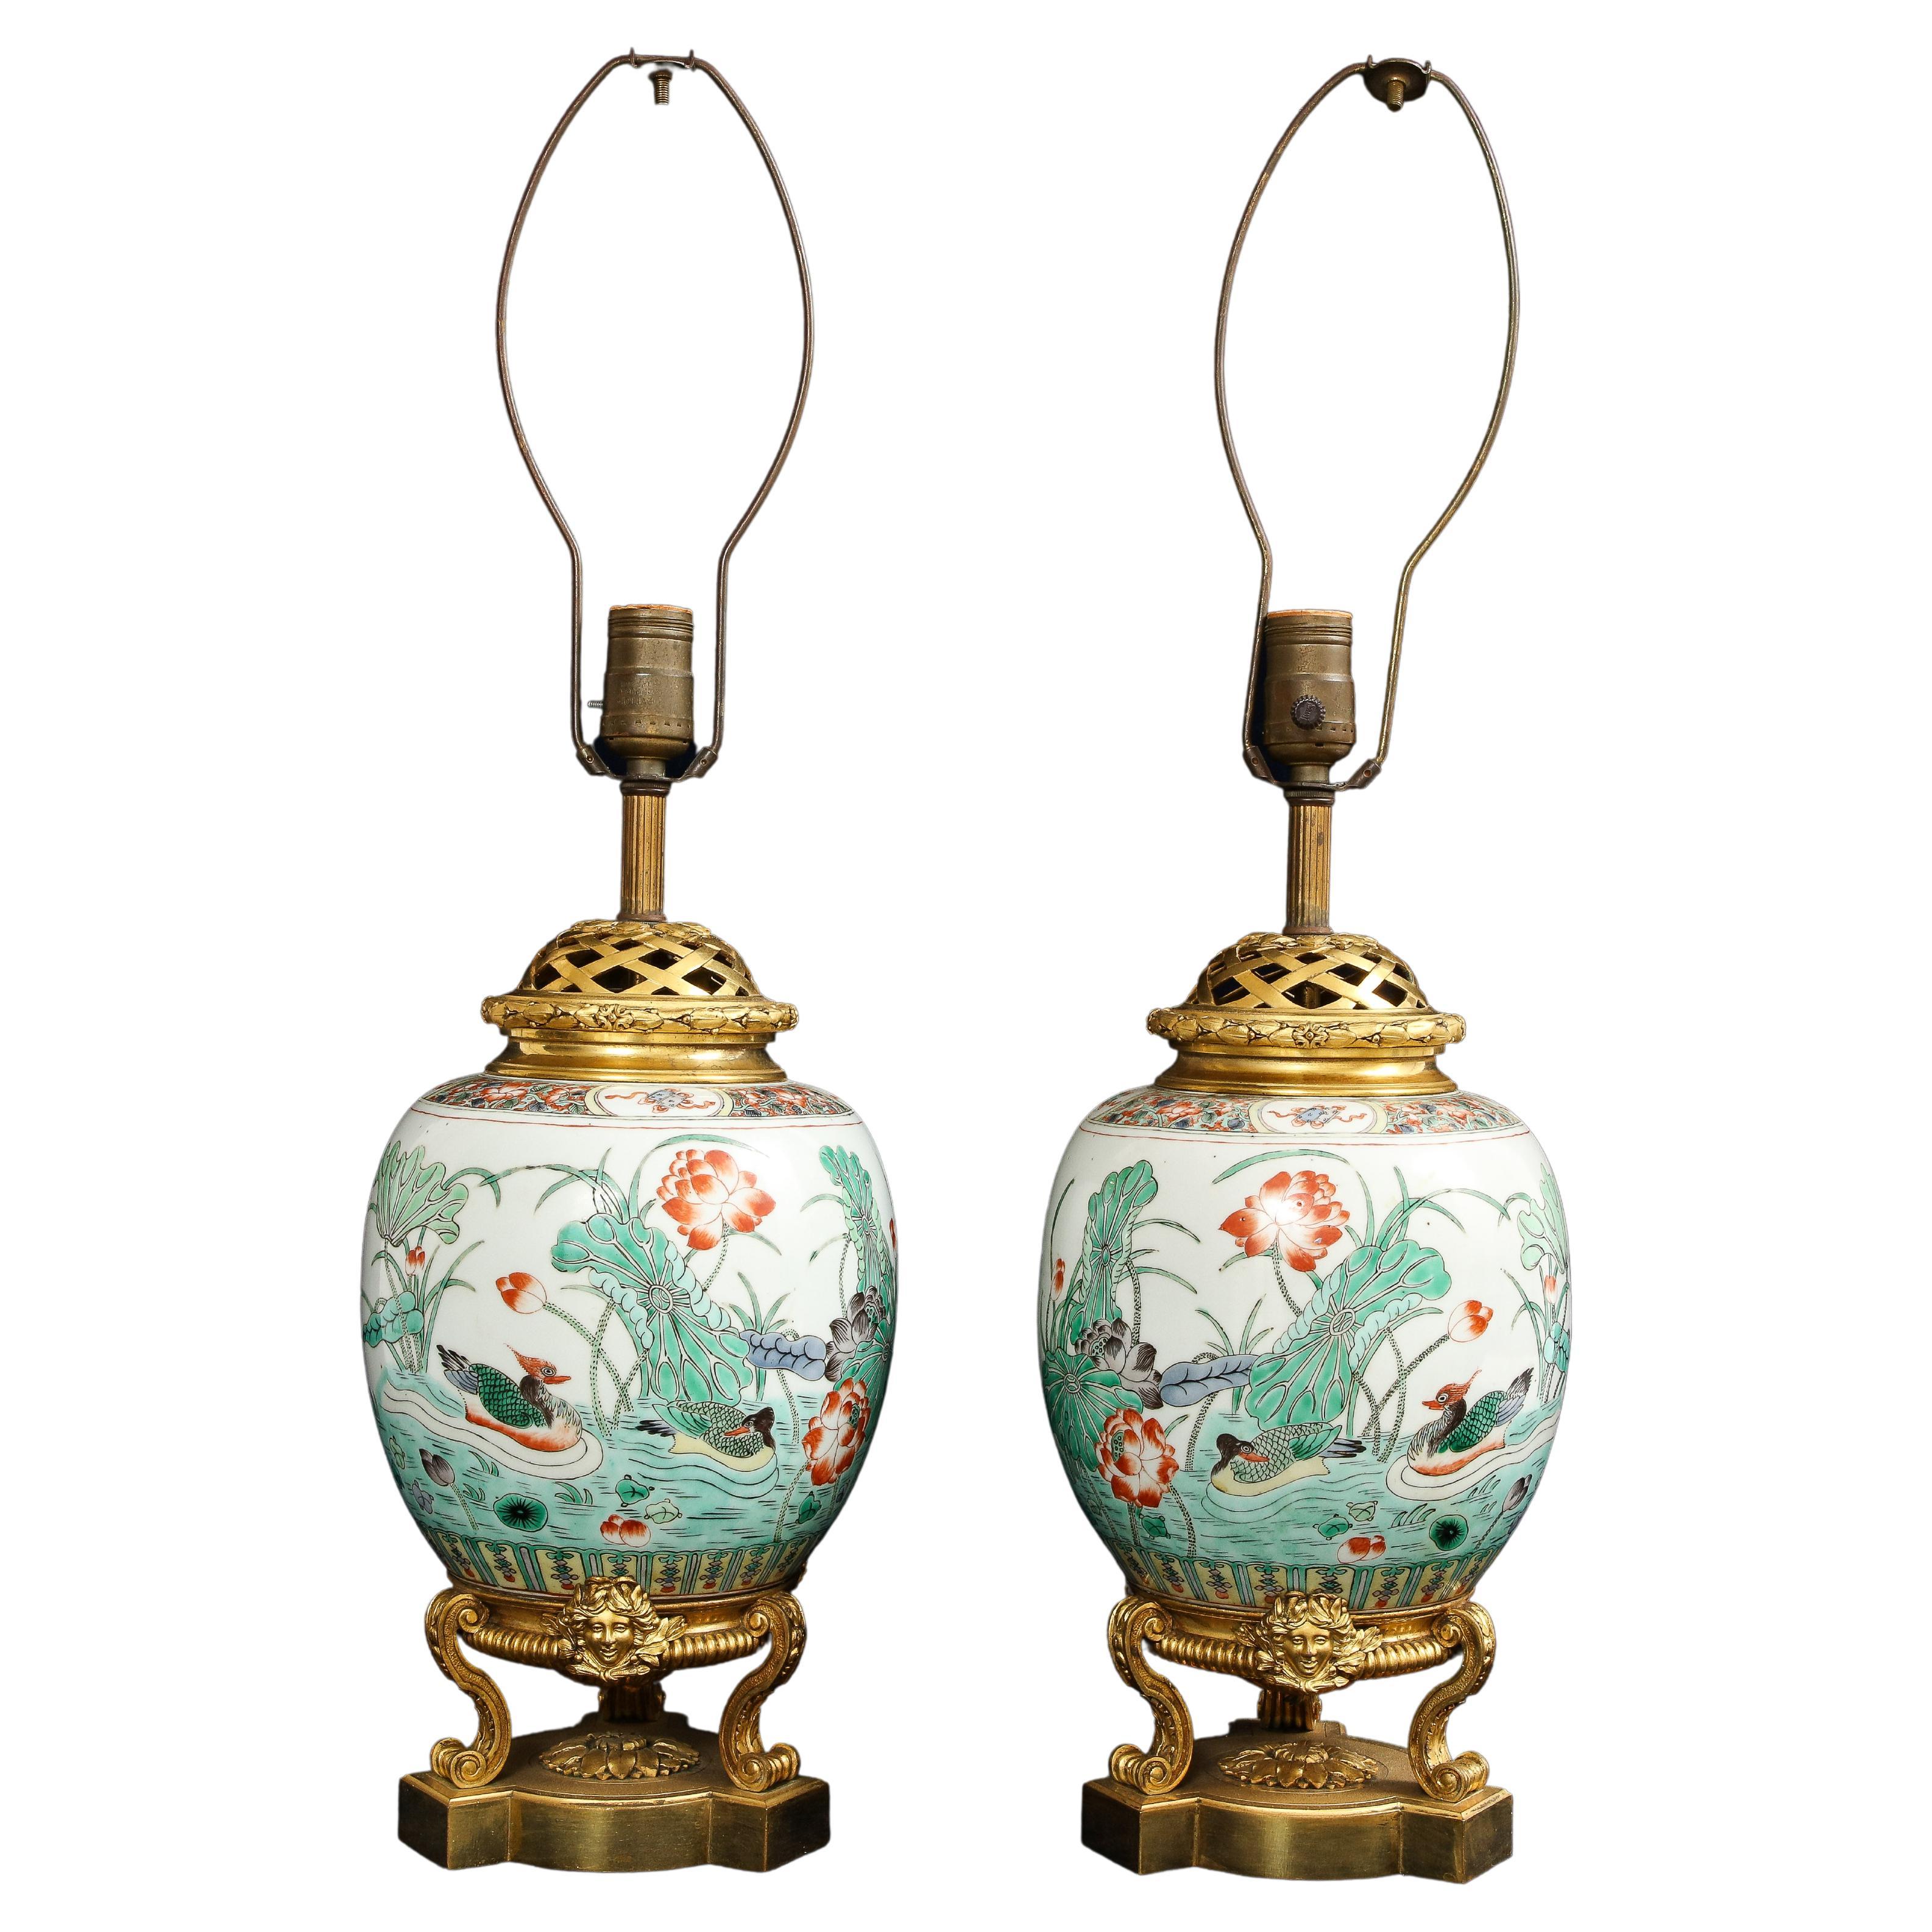 Paar chinesische Famille Verte-Porzellanvasen mit Ormolu-Montierung aus dem 19. Jahrhundert, die zu Lampen umfunktioniert wurden